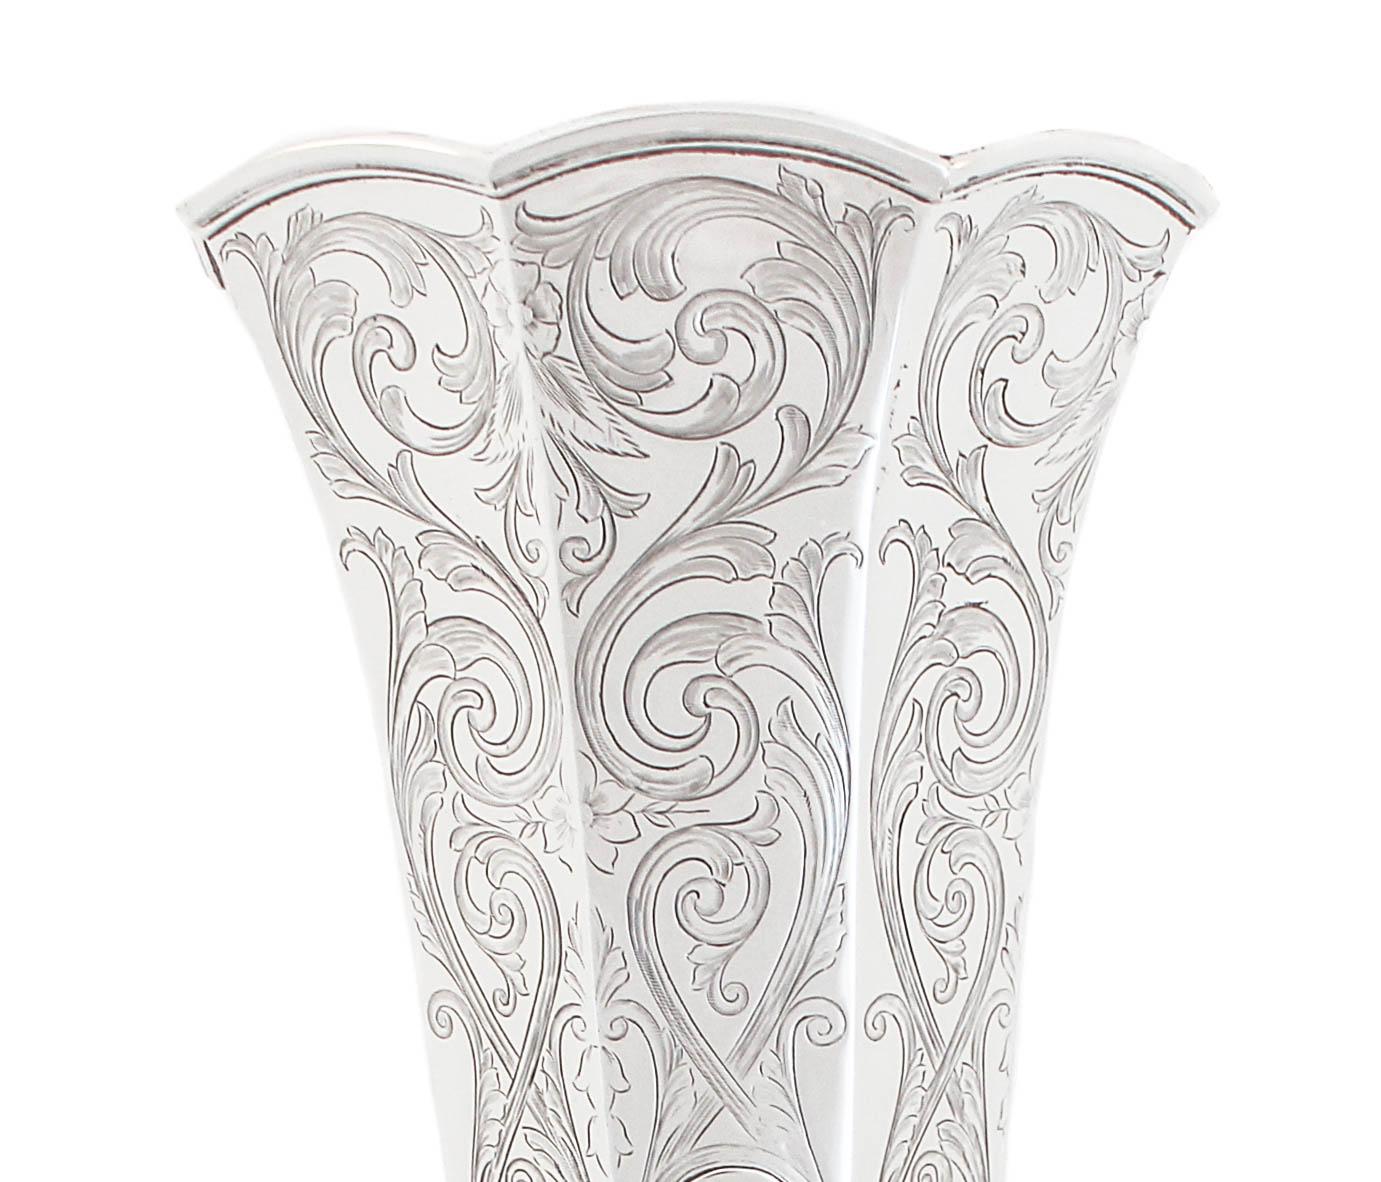 Wir sind stolz, Ihnen diese außergewöhnliche Vase aus Sterlingsilber von Gorham Silversmiths aus Providence, Rhode Island, anbieten zu können.  Sie stammt aus den späten 1800er Jahren, dem goldenen Zeitalter des 19. Jahrhunderts.  Wir haben noch nie